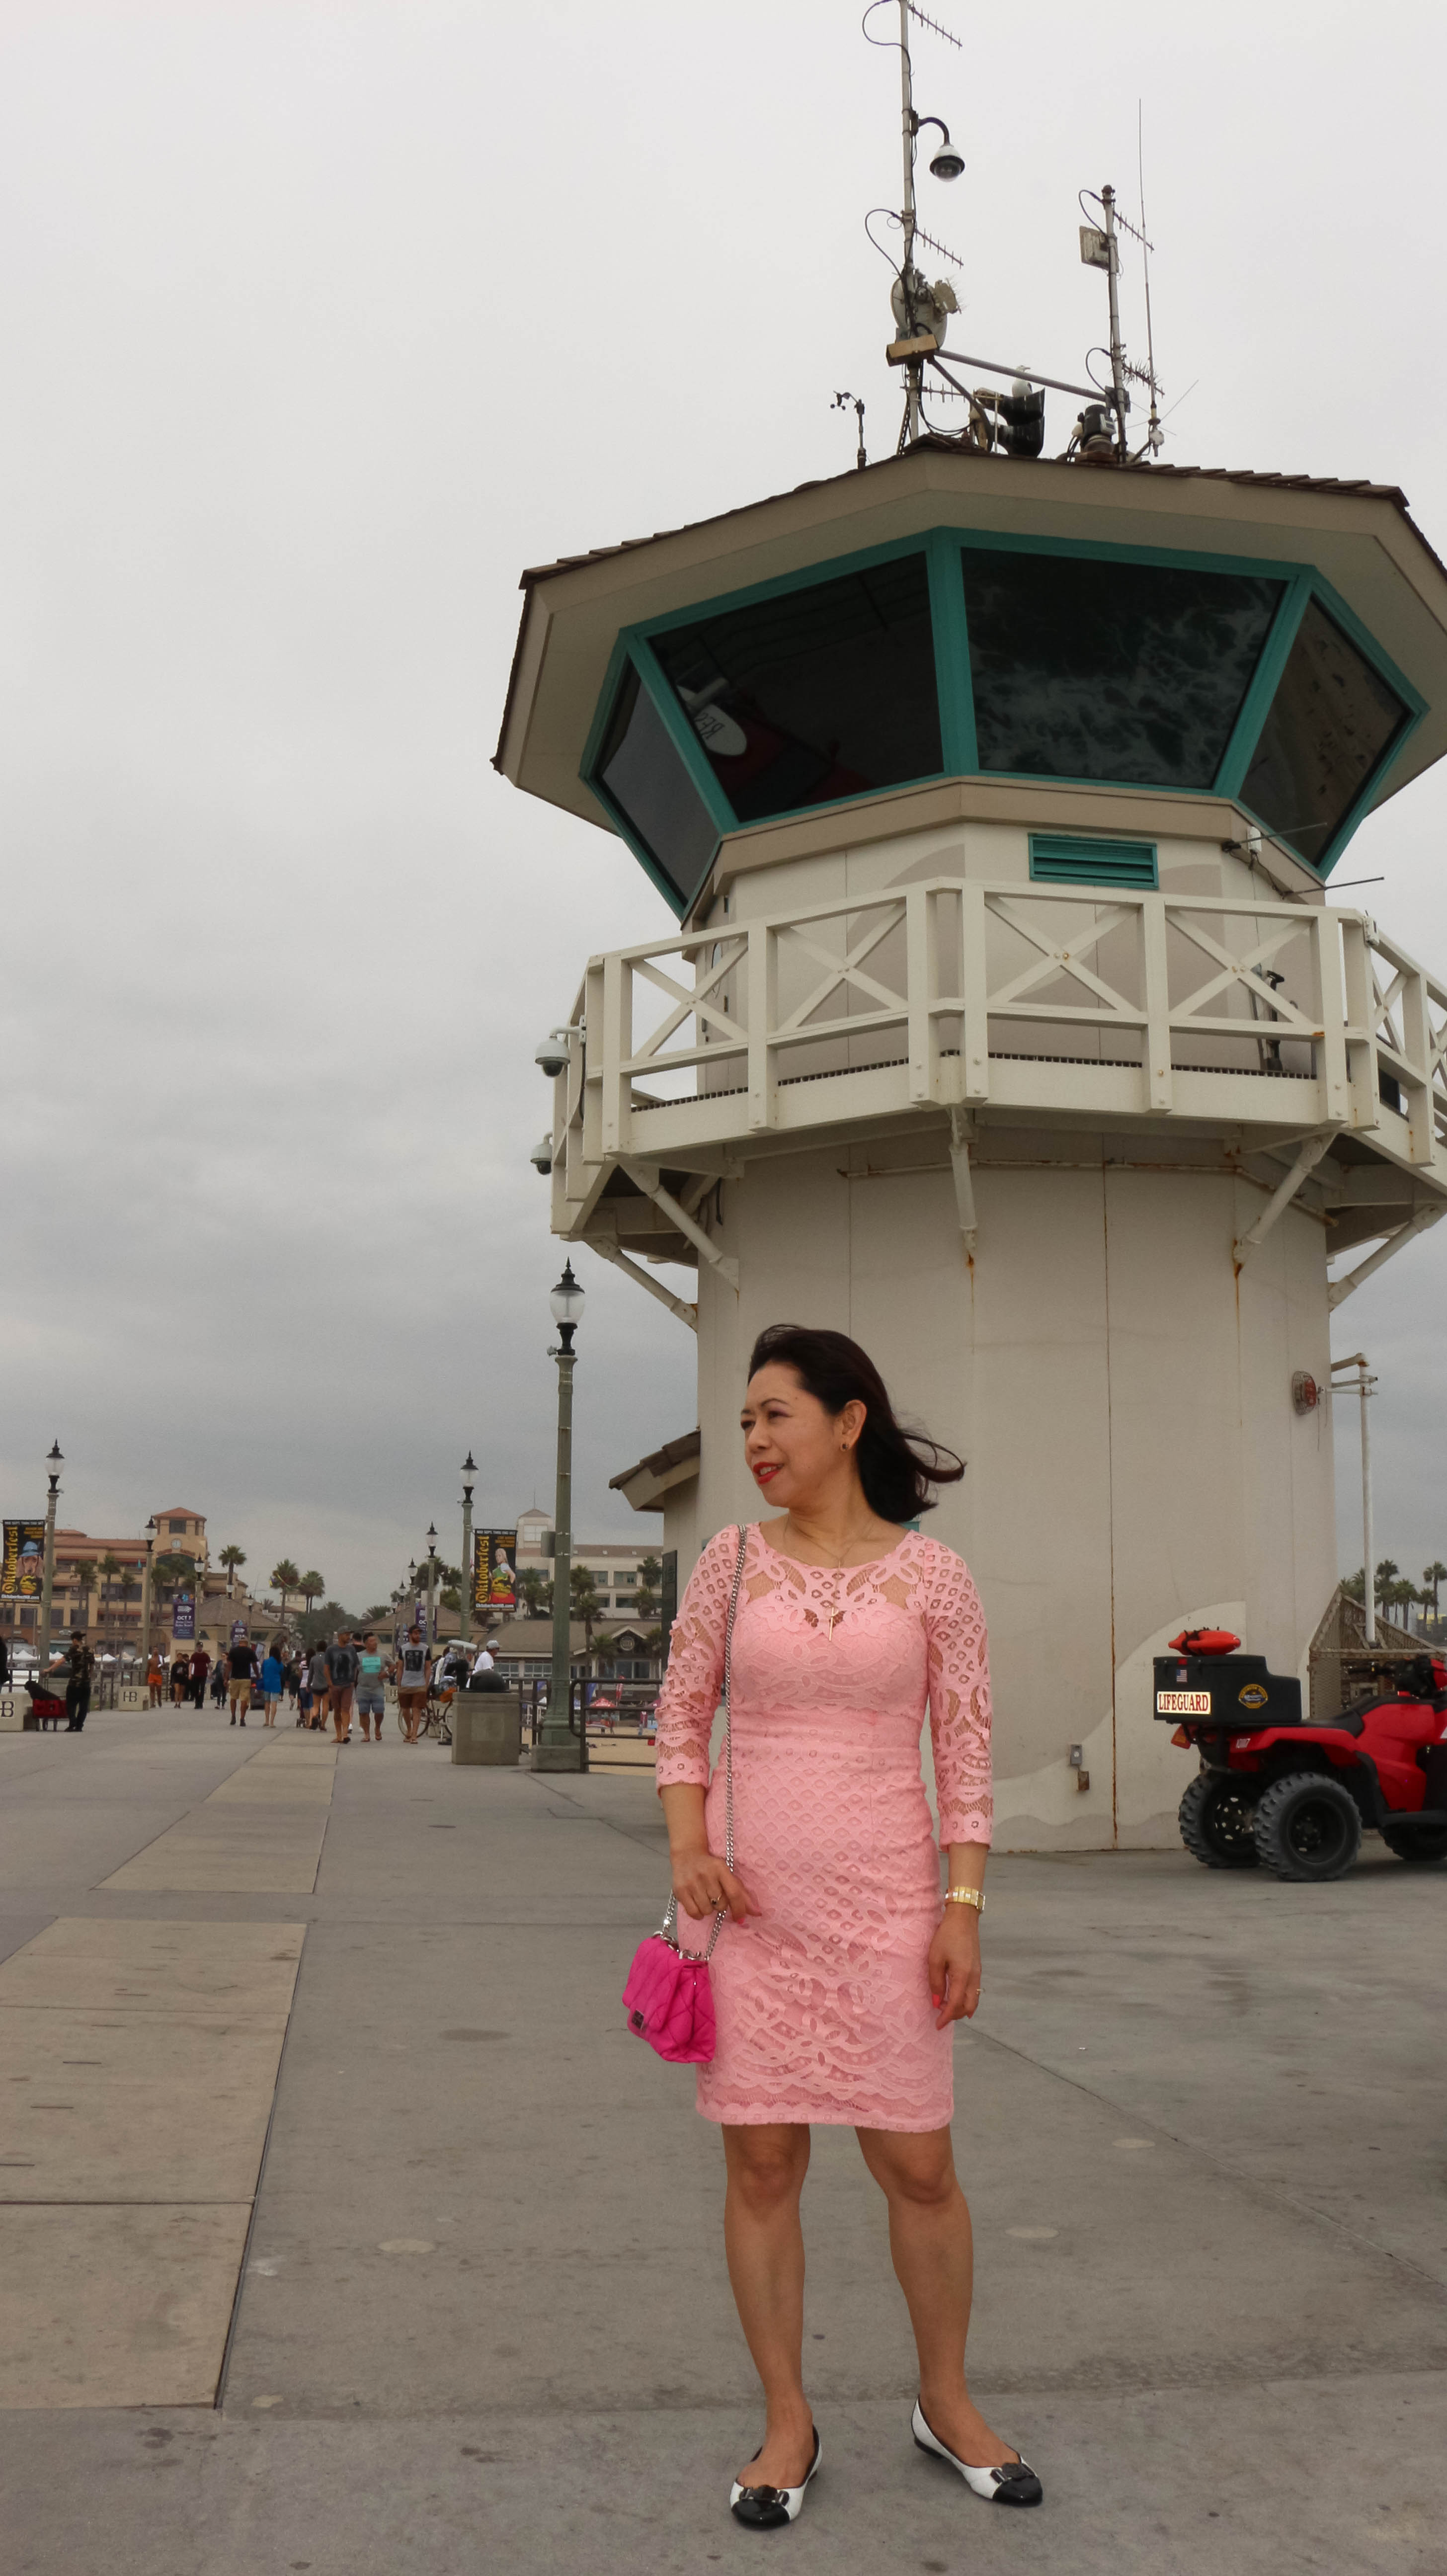 Huntington beach lighthouse